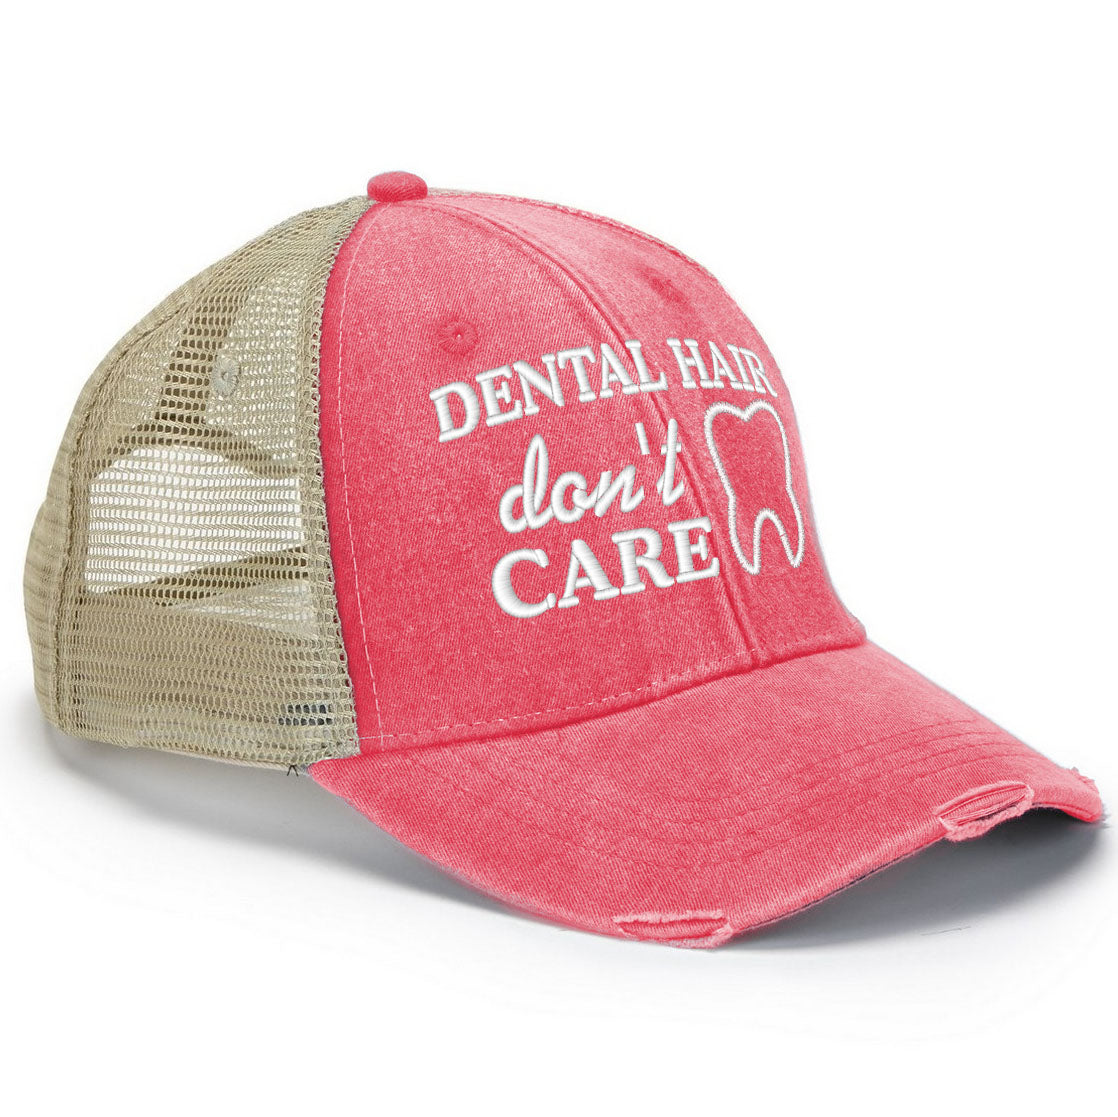 Dental Hair Don't Care Hat